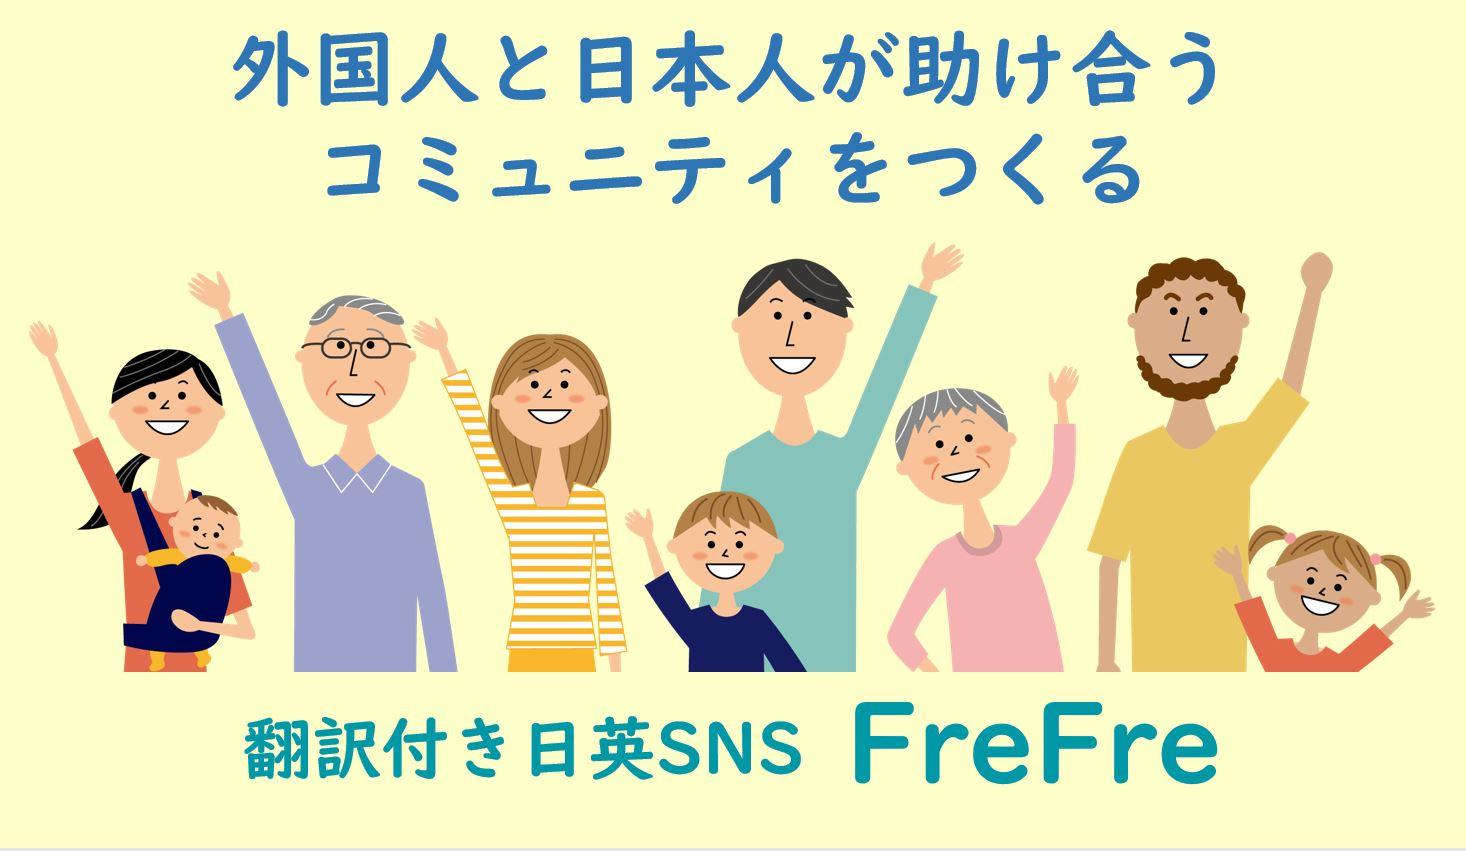 起業部法人登記第4号誕生  コミュニティサイト運営事業「FreFre株式会社」  ～翻訳付きSNS『FreFre』で外国人と助け合う～